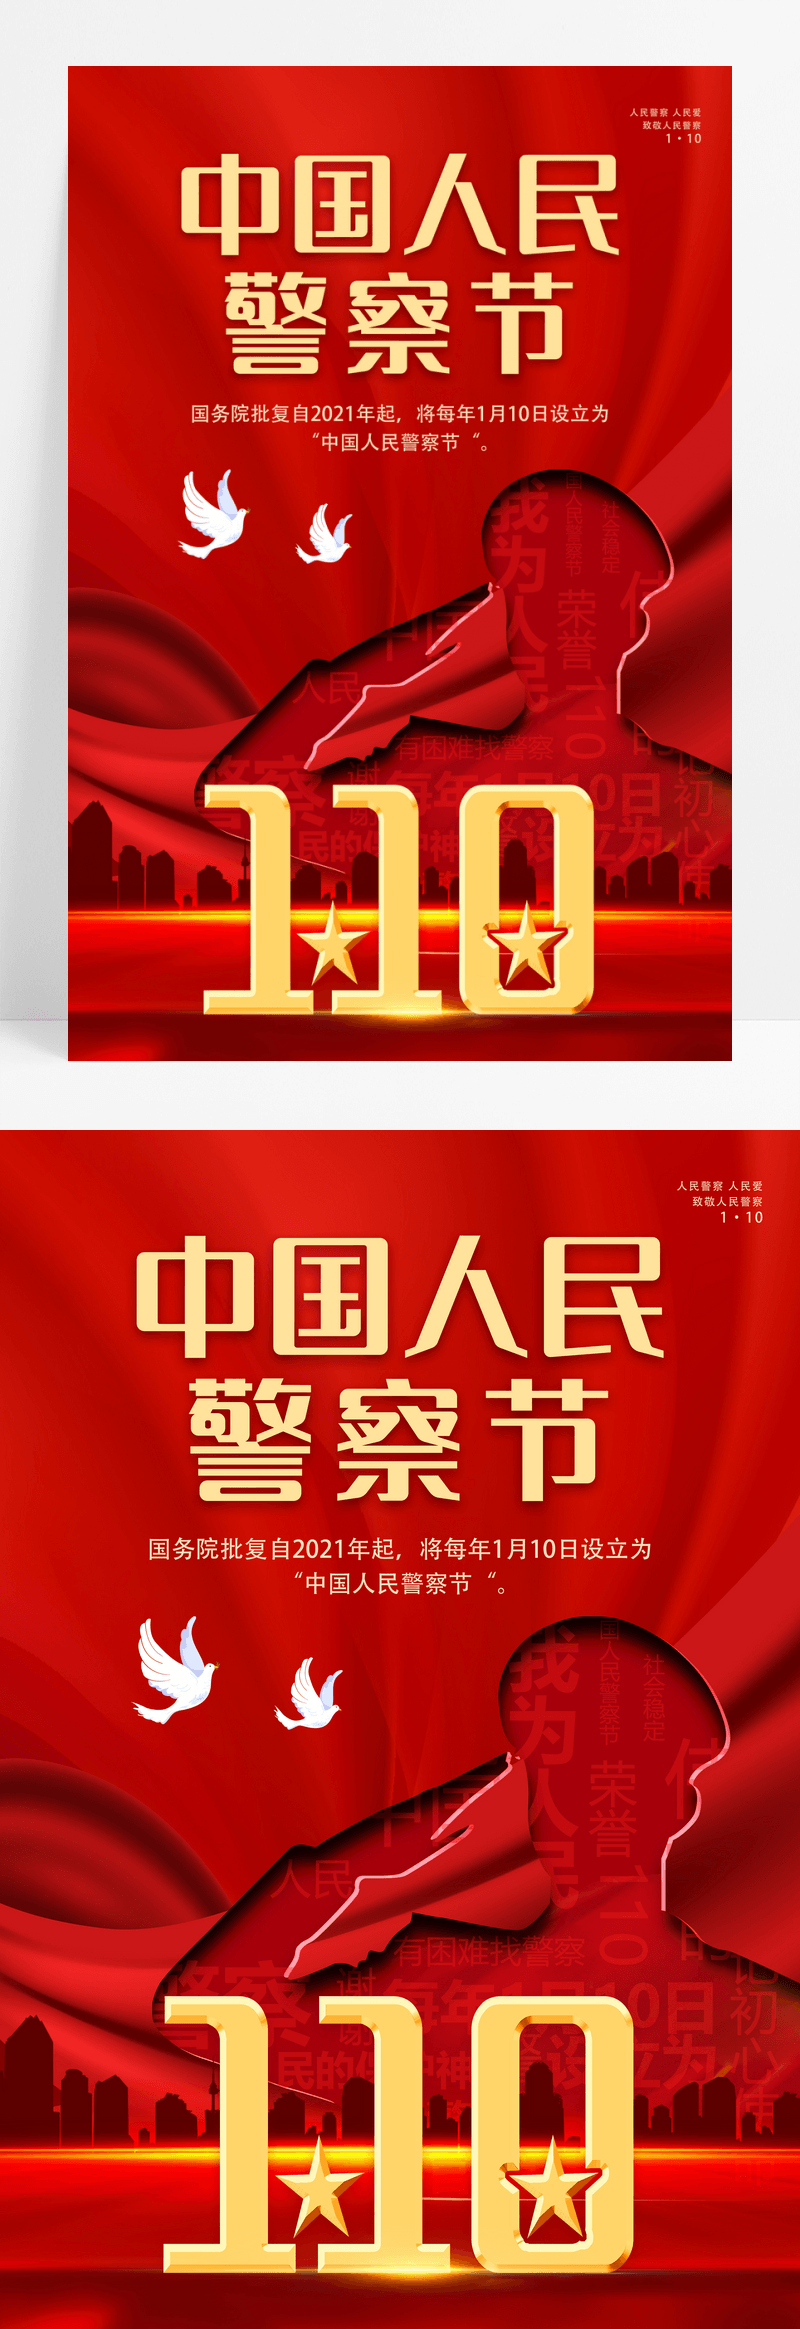 红色大气中国人民警察节宣传海报设计